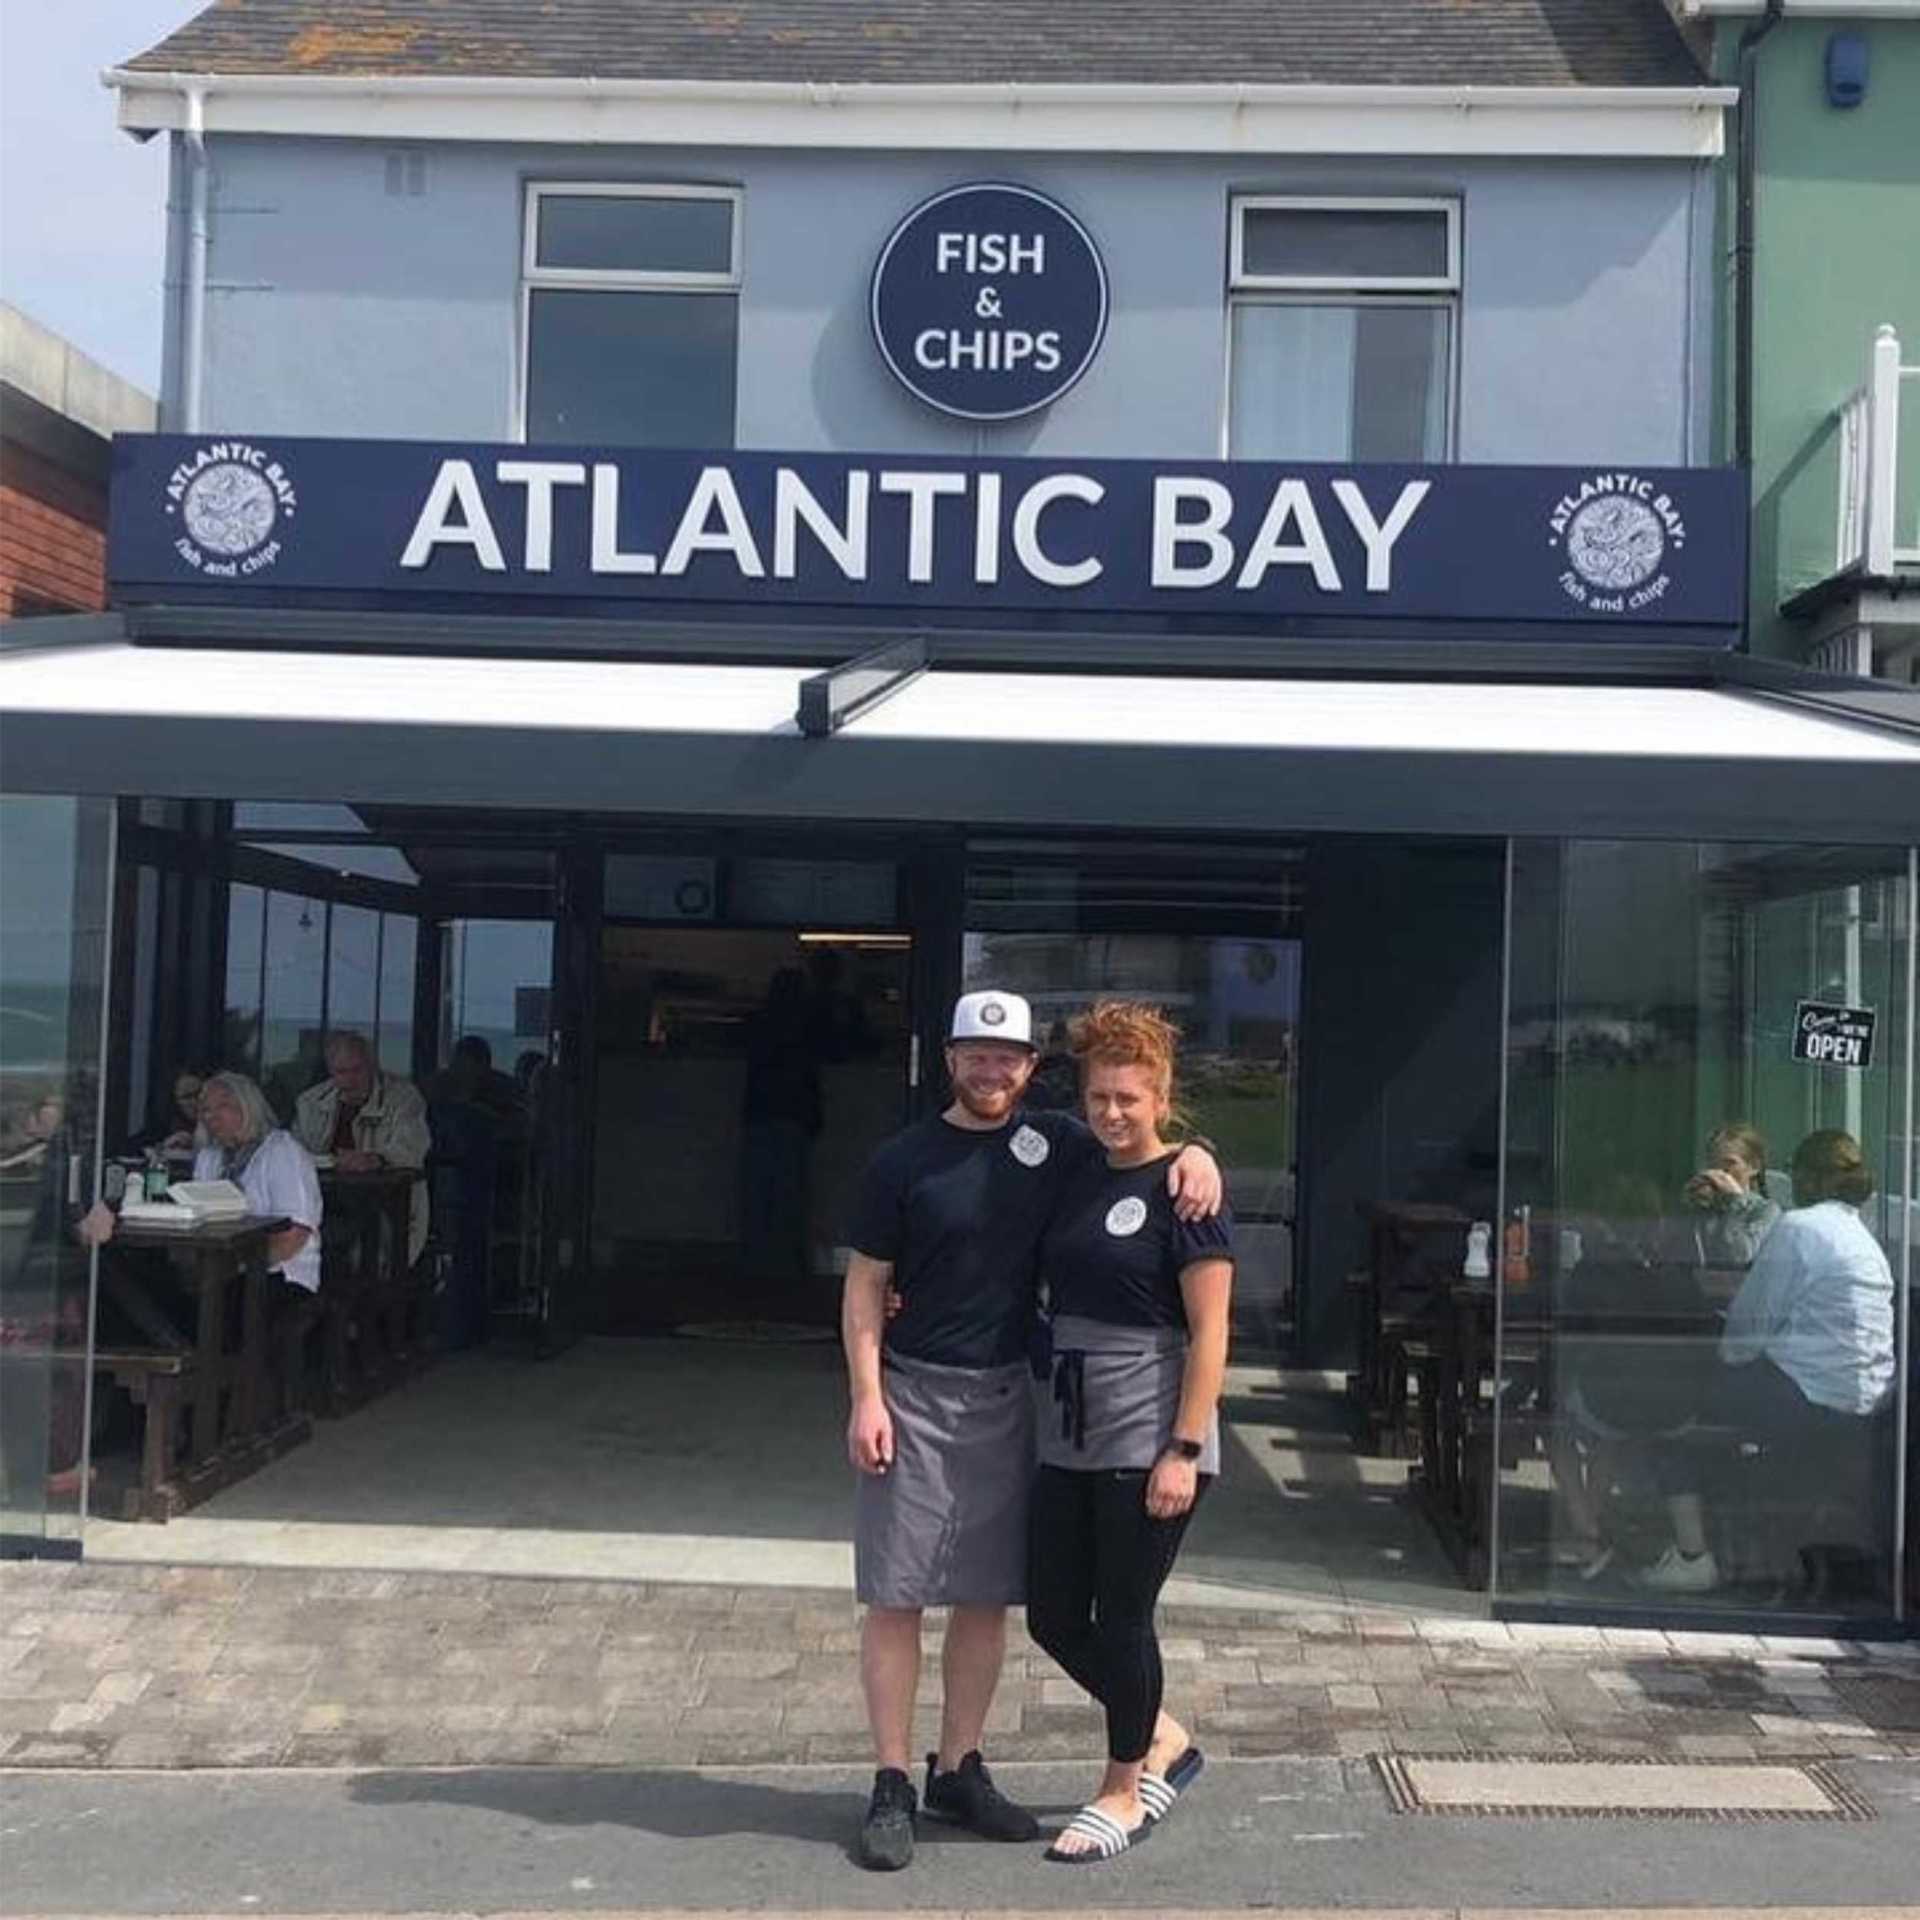 Atlantic Bay Chip Shop in Westward Ho!, North Devon